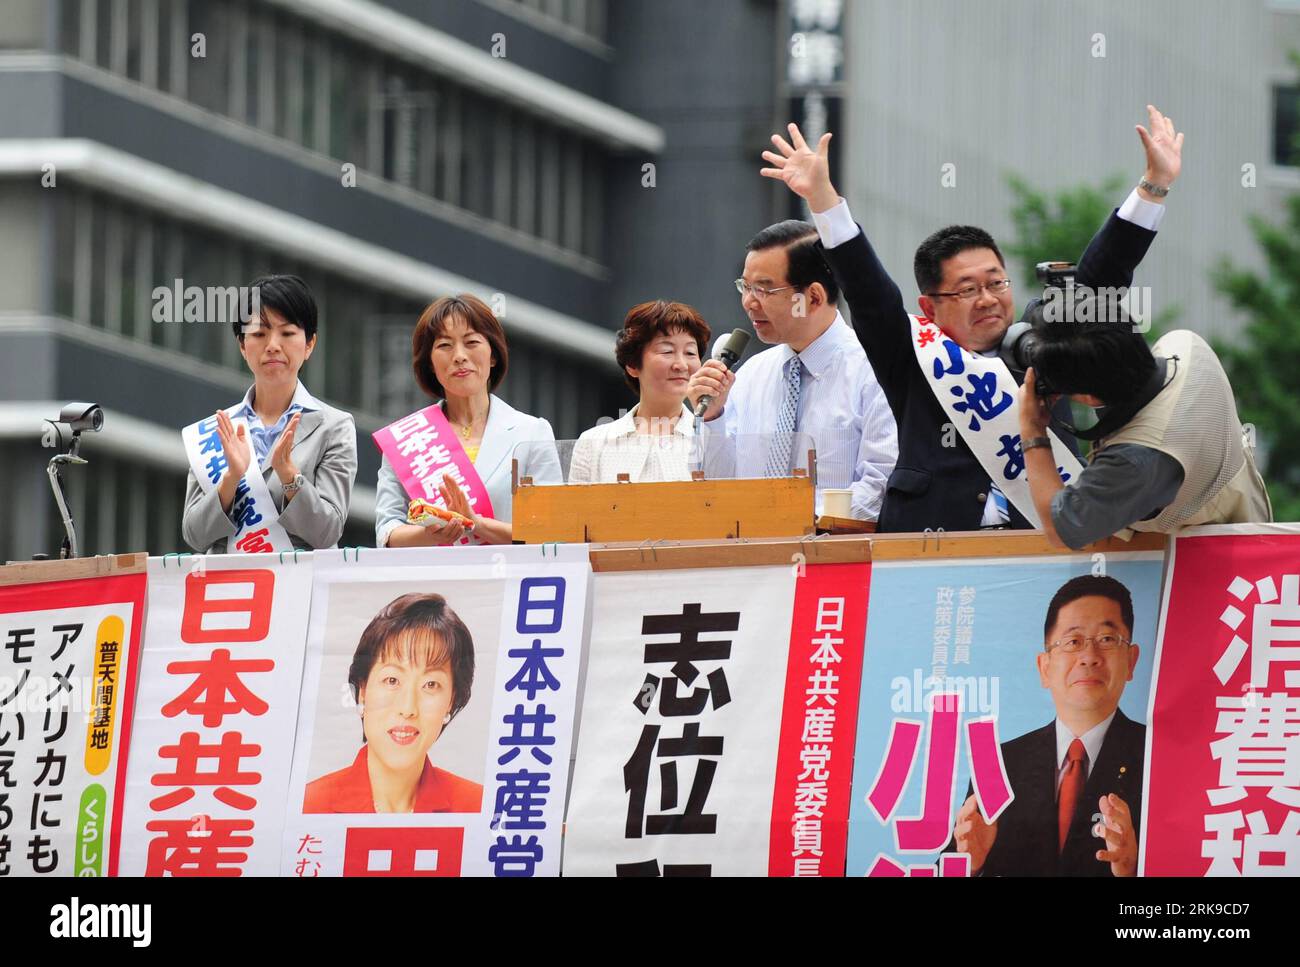 Bildnummer: 54167570 Datum: 24.06.2010 Copyright: imago/Xinhua (100624) -- TOKIO, 24. Juni 2010 (Xinhua) -- Kazuo Shii (4. L), Führer der japanischen Kommunistischen Partei (JCP), und Parteikandidaten inszenieren eine Kampagne für die Sitze des Oberhauses in Tokio, Japan, 24. Juni 2010. Japanische Parteivertreter gingen am Donnerstag auf die Straße, als die offizielle Kampagne für die Wahl zum House of Councillors am 11. Juli begann. (Xinhua/Ji Chunpeng) (hdt) (7)JAPAN-POLITISCHE PARTEIEN-OBERHAUS-KAMPAGNE-START PUBLICATIONxNOTxINxCHN People Politik kbdig xsk 2010 quer Bildnummer 54167570 Datum 24 06 201 Stockfoto